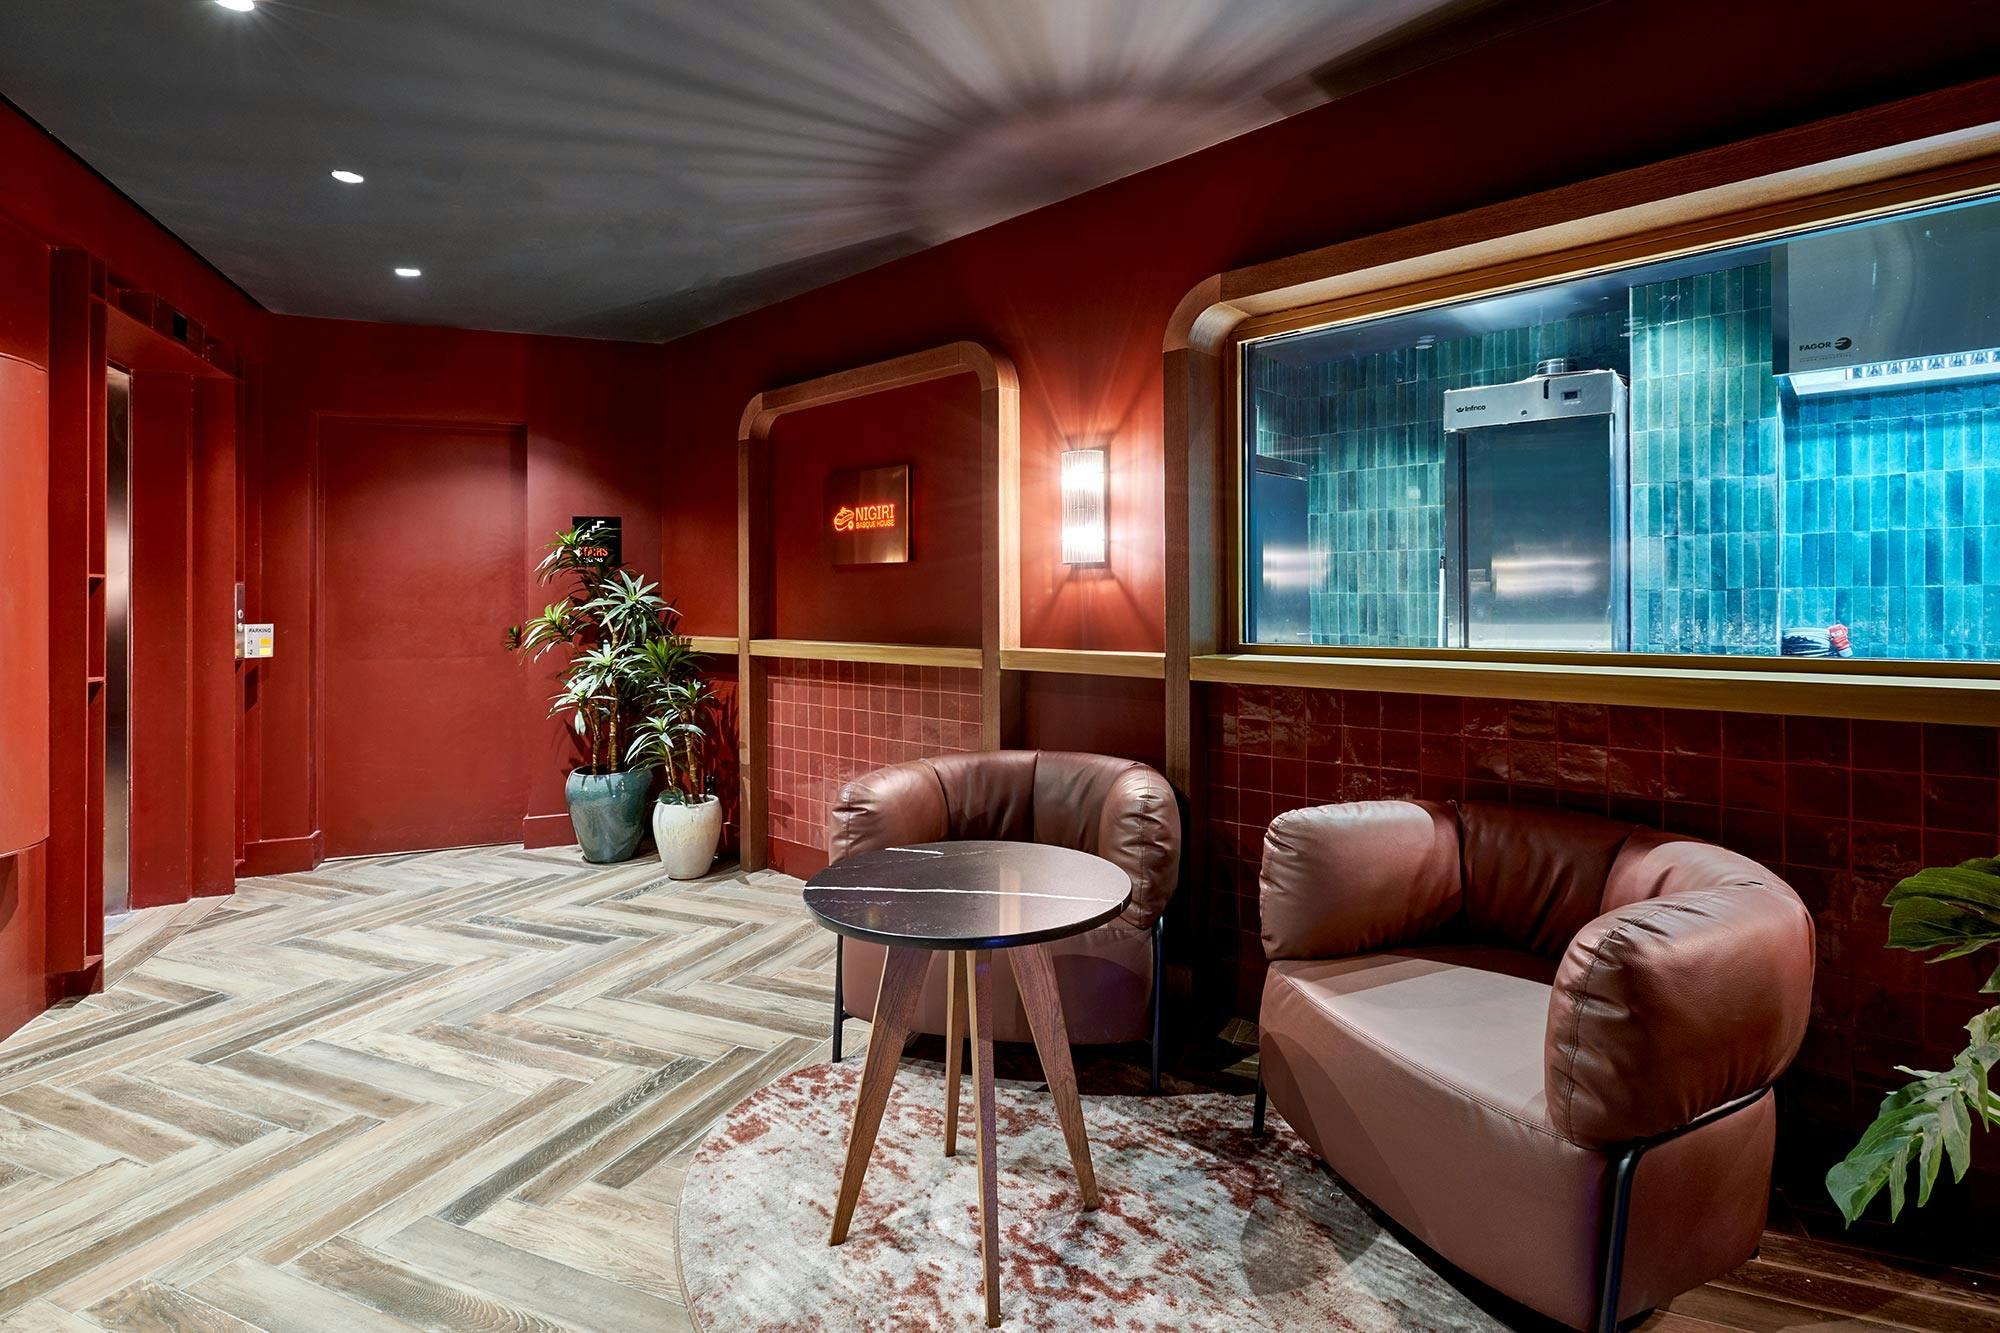 Imagem número 35 da actual secção de Silestone brings a touch of elegance to the Radisson RED Madrid hotel da Cosentino Portugal